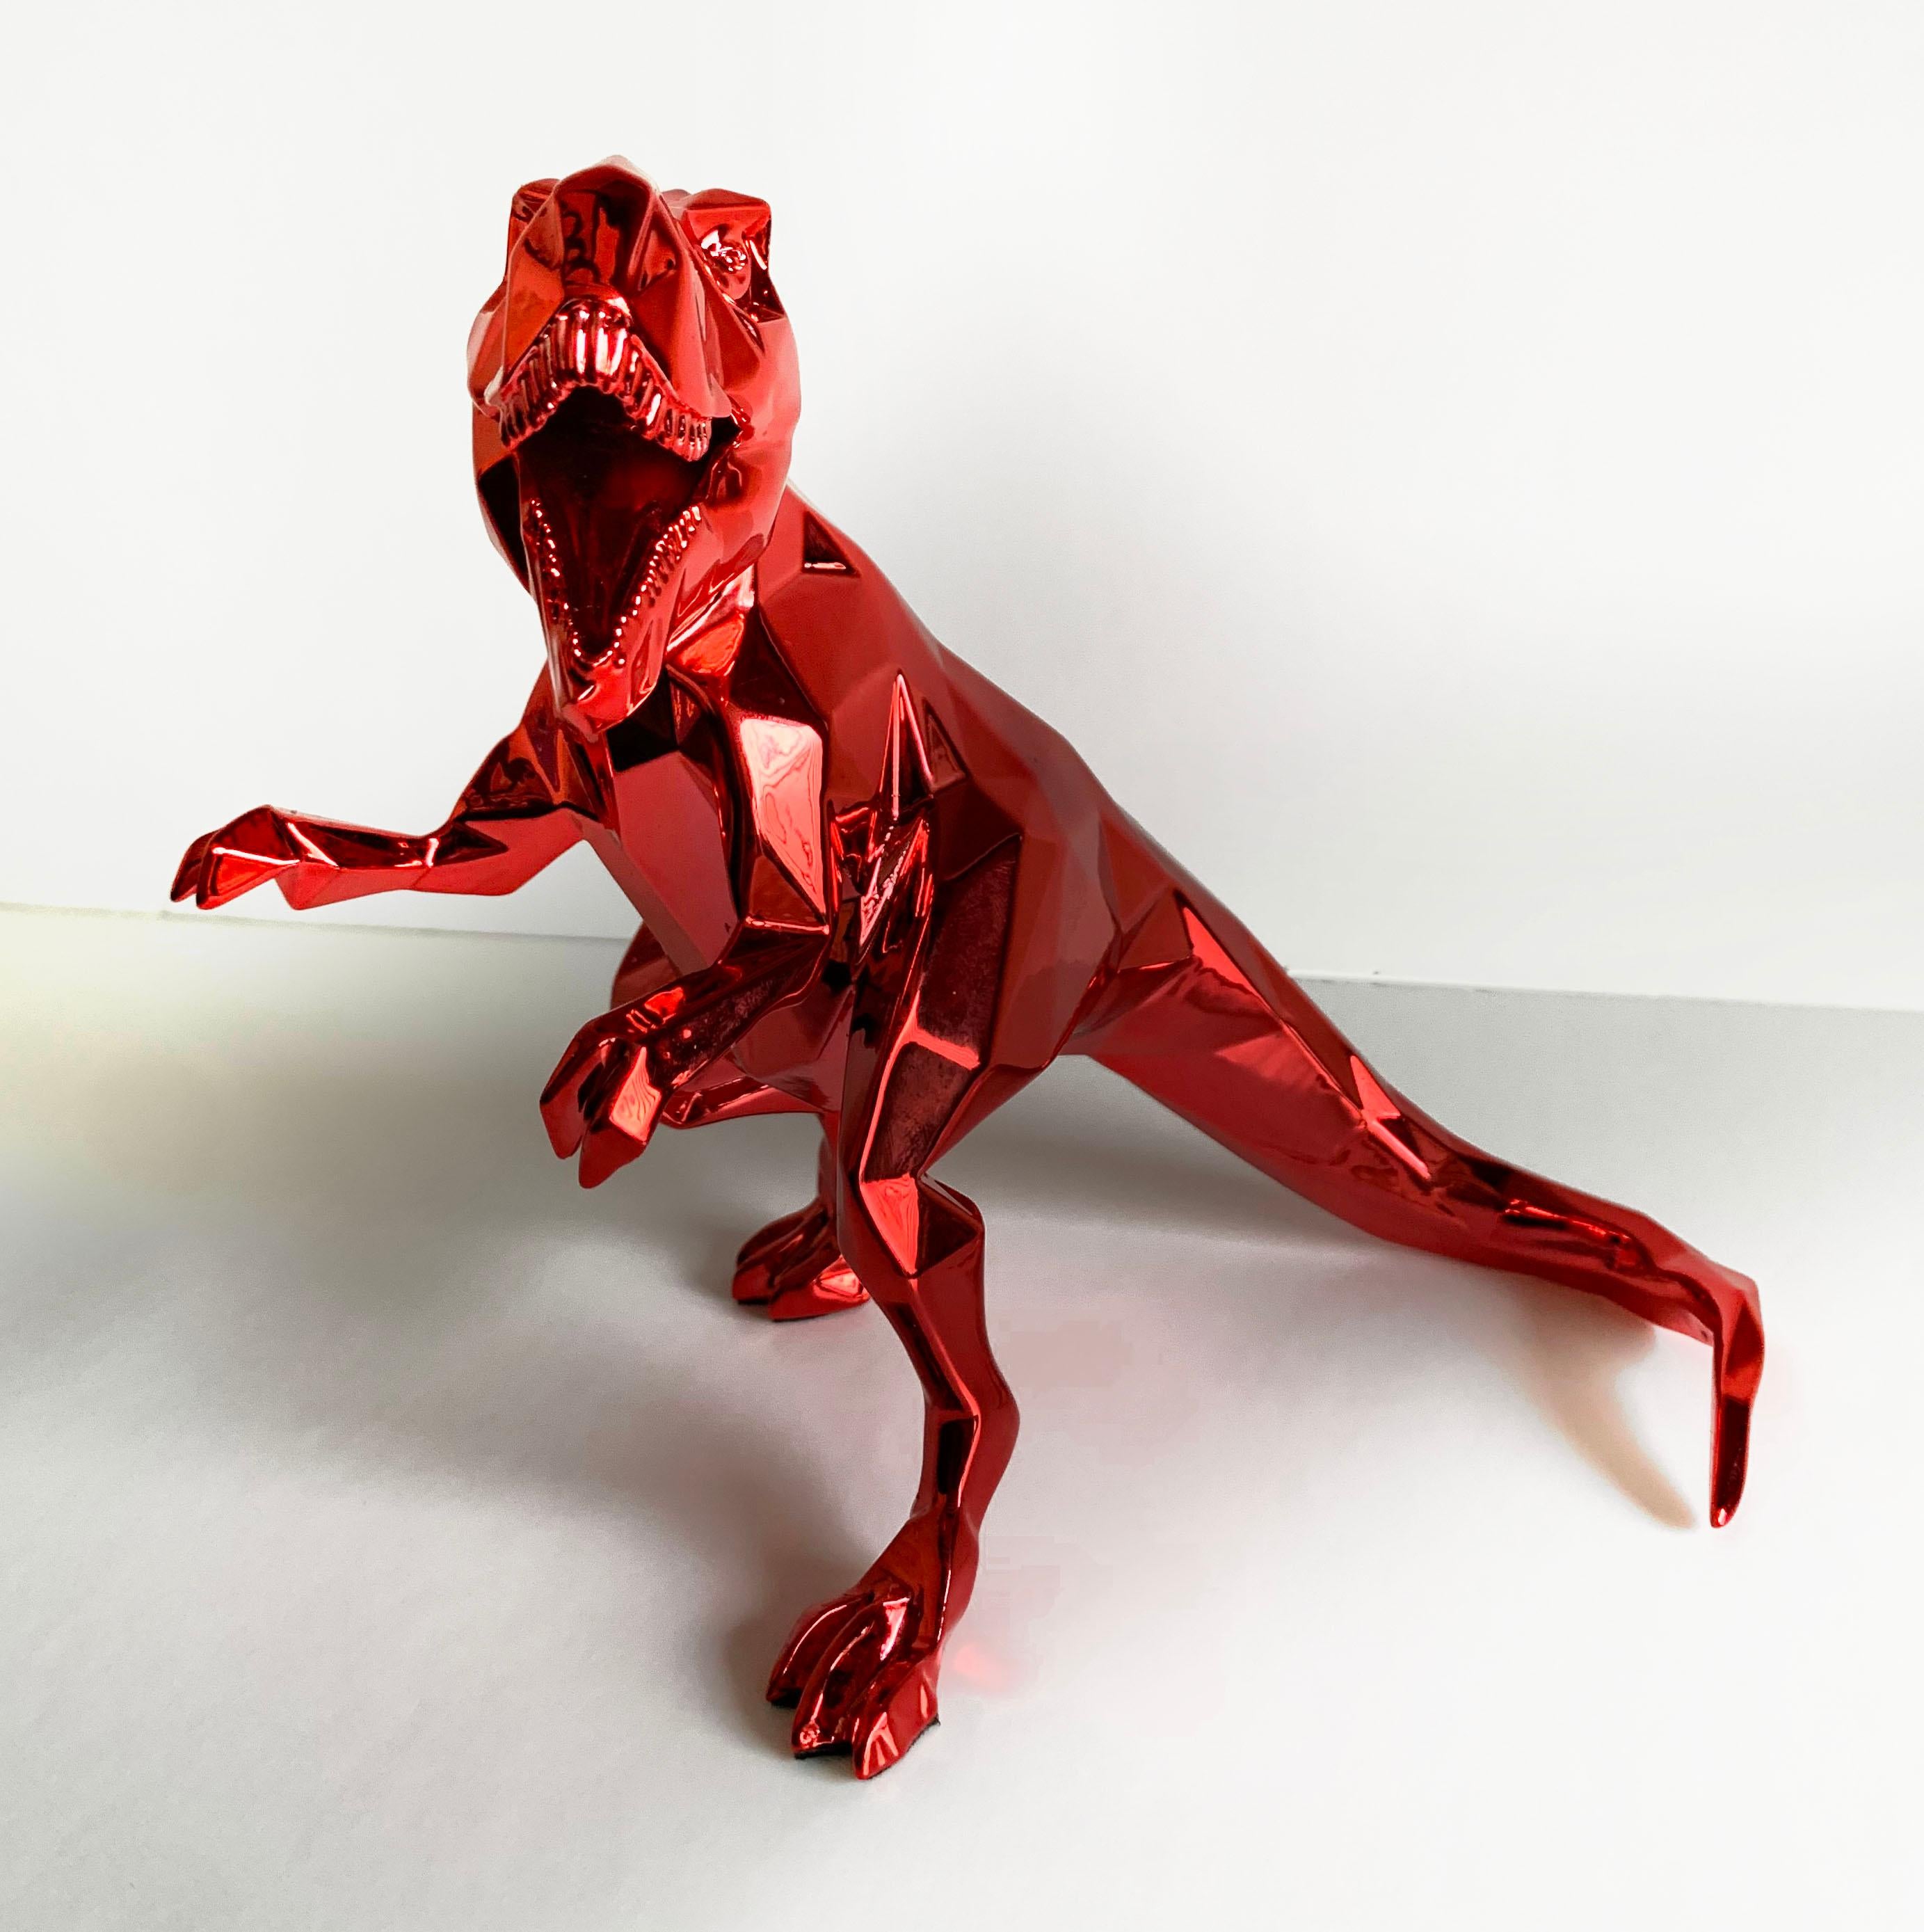 Sculpture de l'esprit AT&T - Richard Orlinski

En résine rouge 
Avec étui d'origine et certificat d'authenticité
2020

Taille : 14,5 x 16 cm

690€.